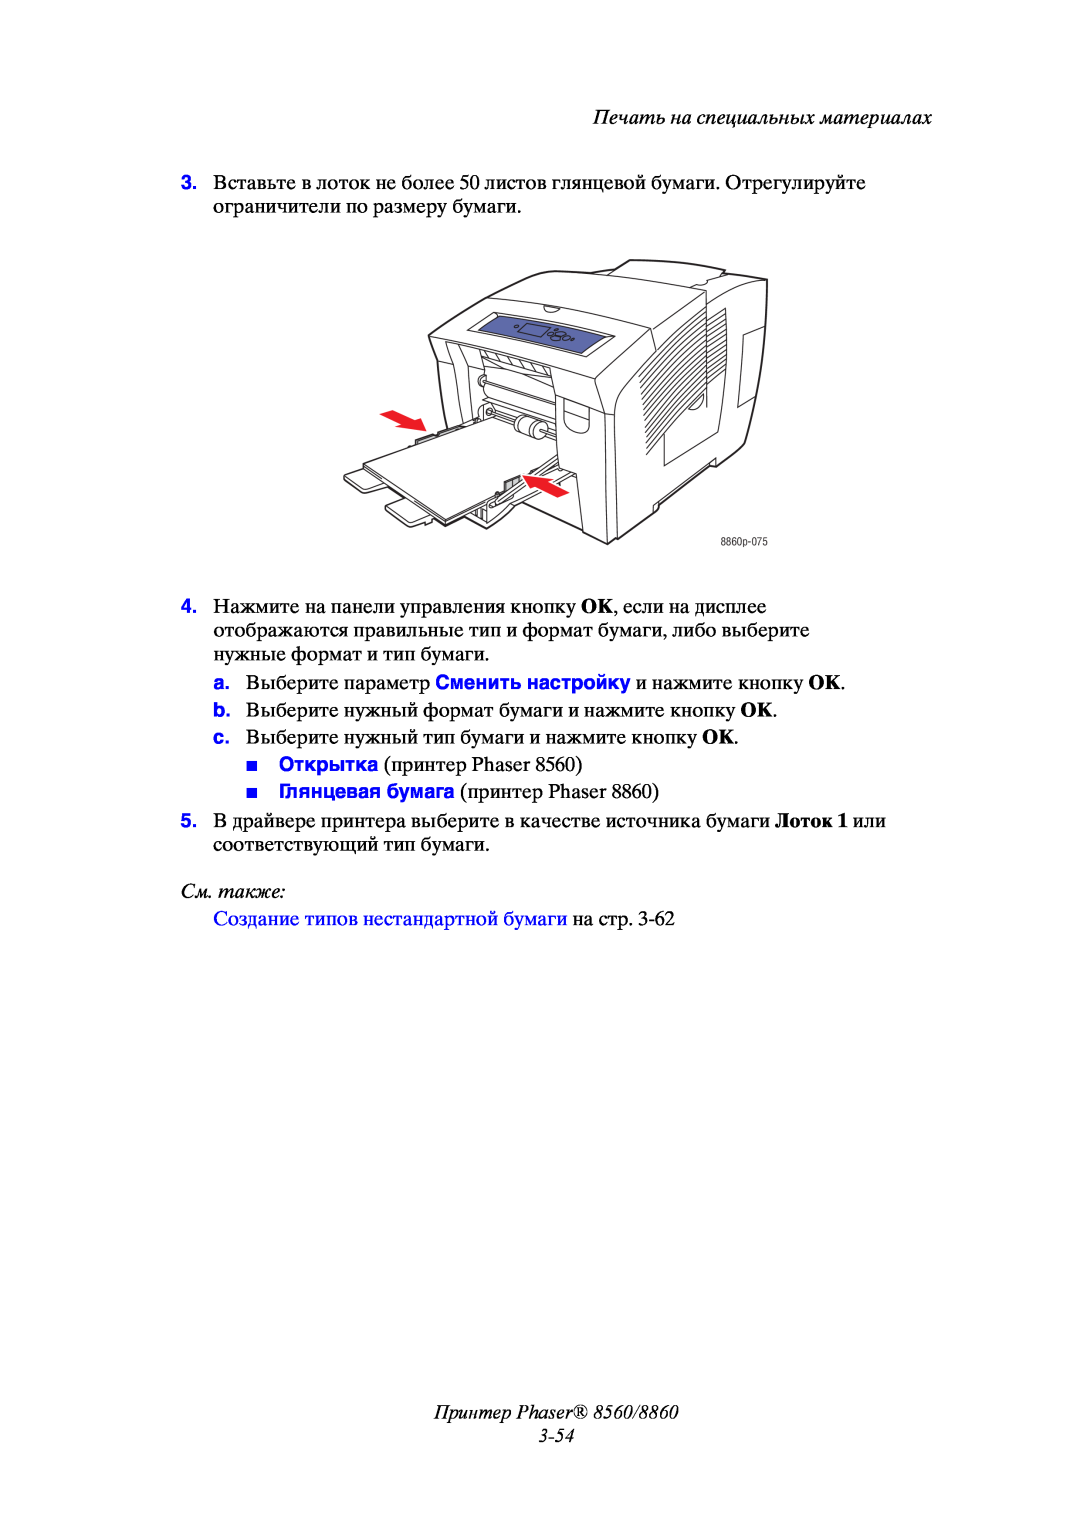 Xerox manual Принтер Phaser 8560/8860 3-54, Печать на специальных материалах, См. также 